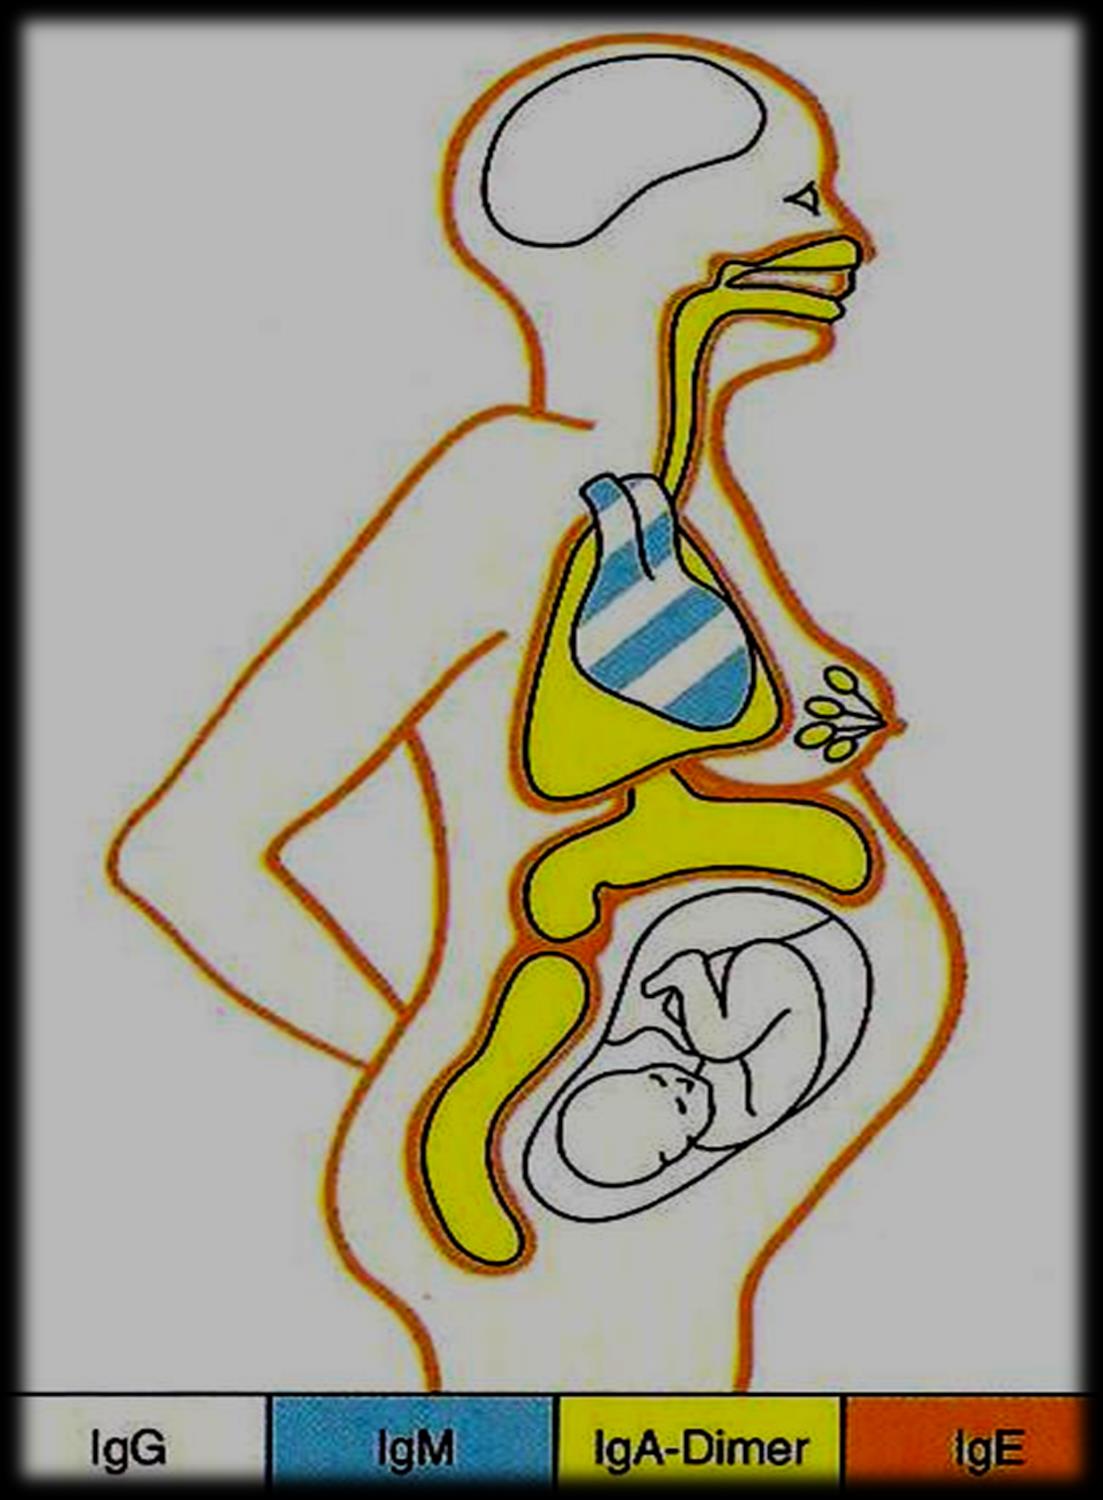 Colostrum, zur Anregung der Th1-Lymphozyten IgG IgM IgA Neugeborene kommen immunschwach auf die Welt und haben daher alle von der Mutter verfügbaren Antikörper (IgG)über die